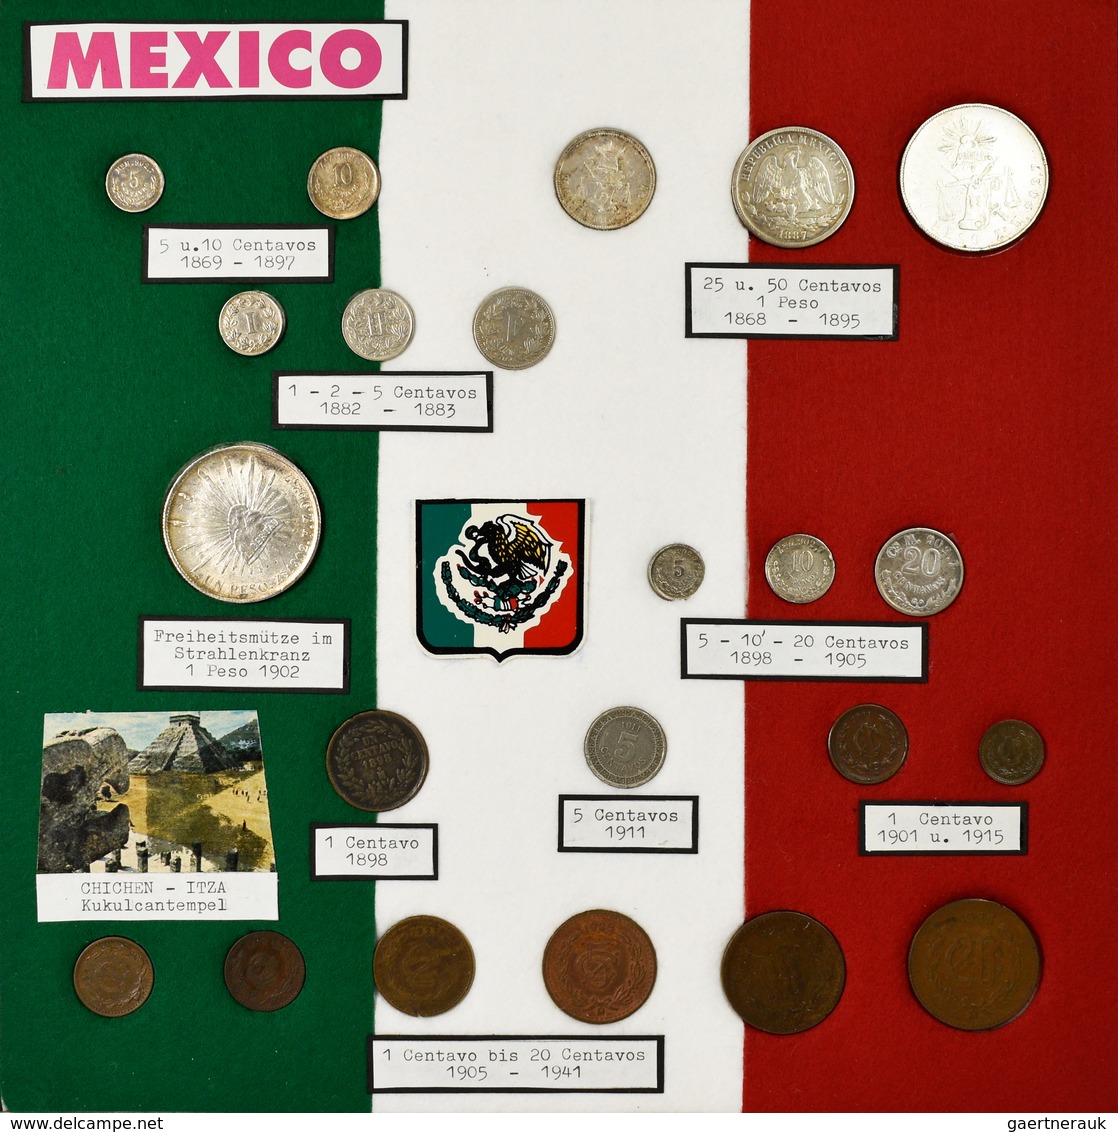 Mexiko: Eine umfangreiche Typensammlung Mexikanischer Münzen ab ca. 1823. 12 BEBA Schuber mit Münzen